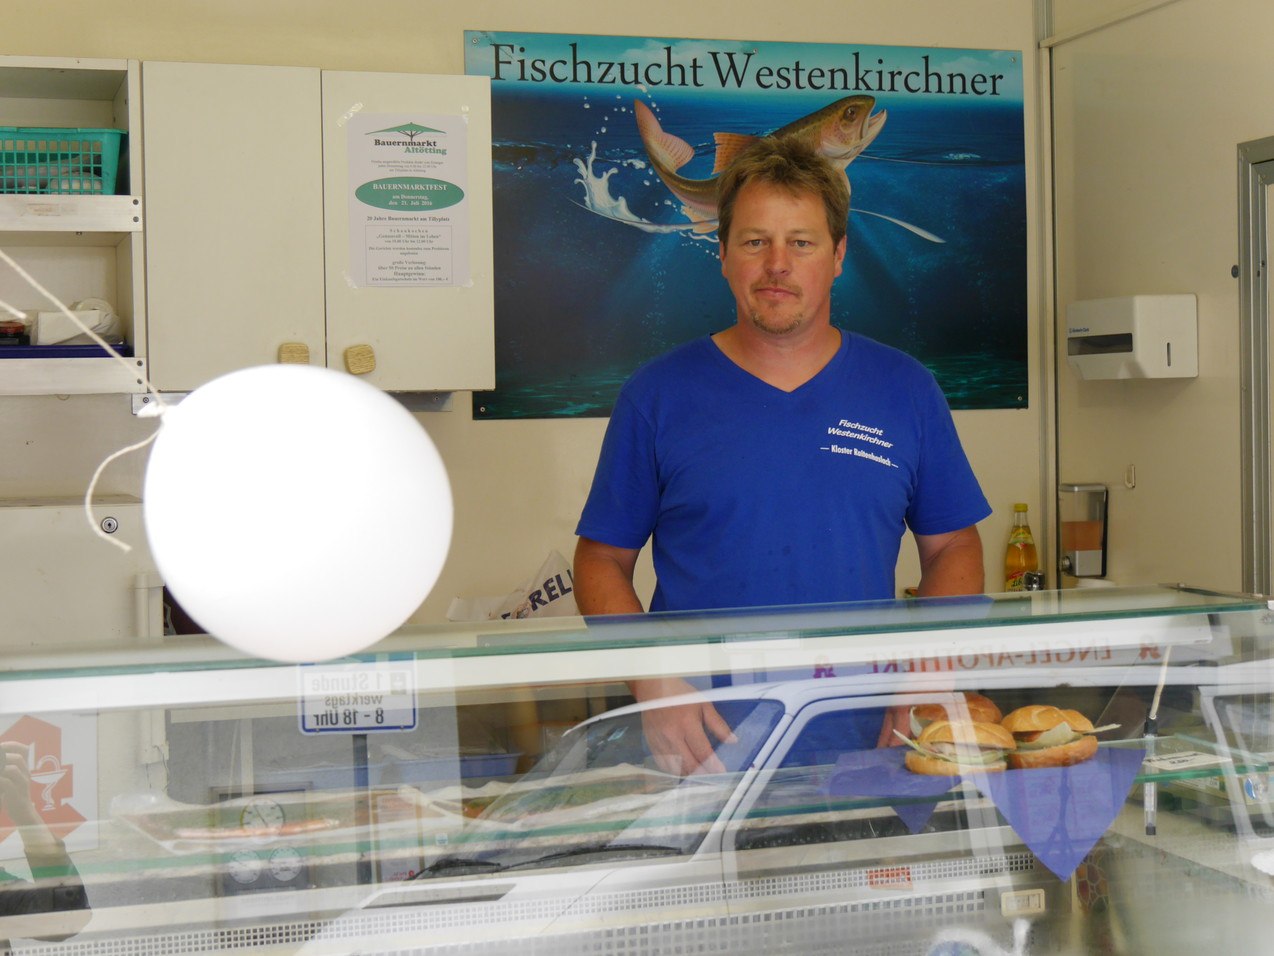 Verkauf der Fischzucht Westenkirchner, © Fischzucht Westenkirchner